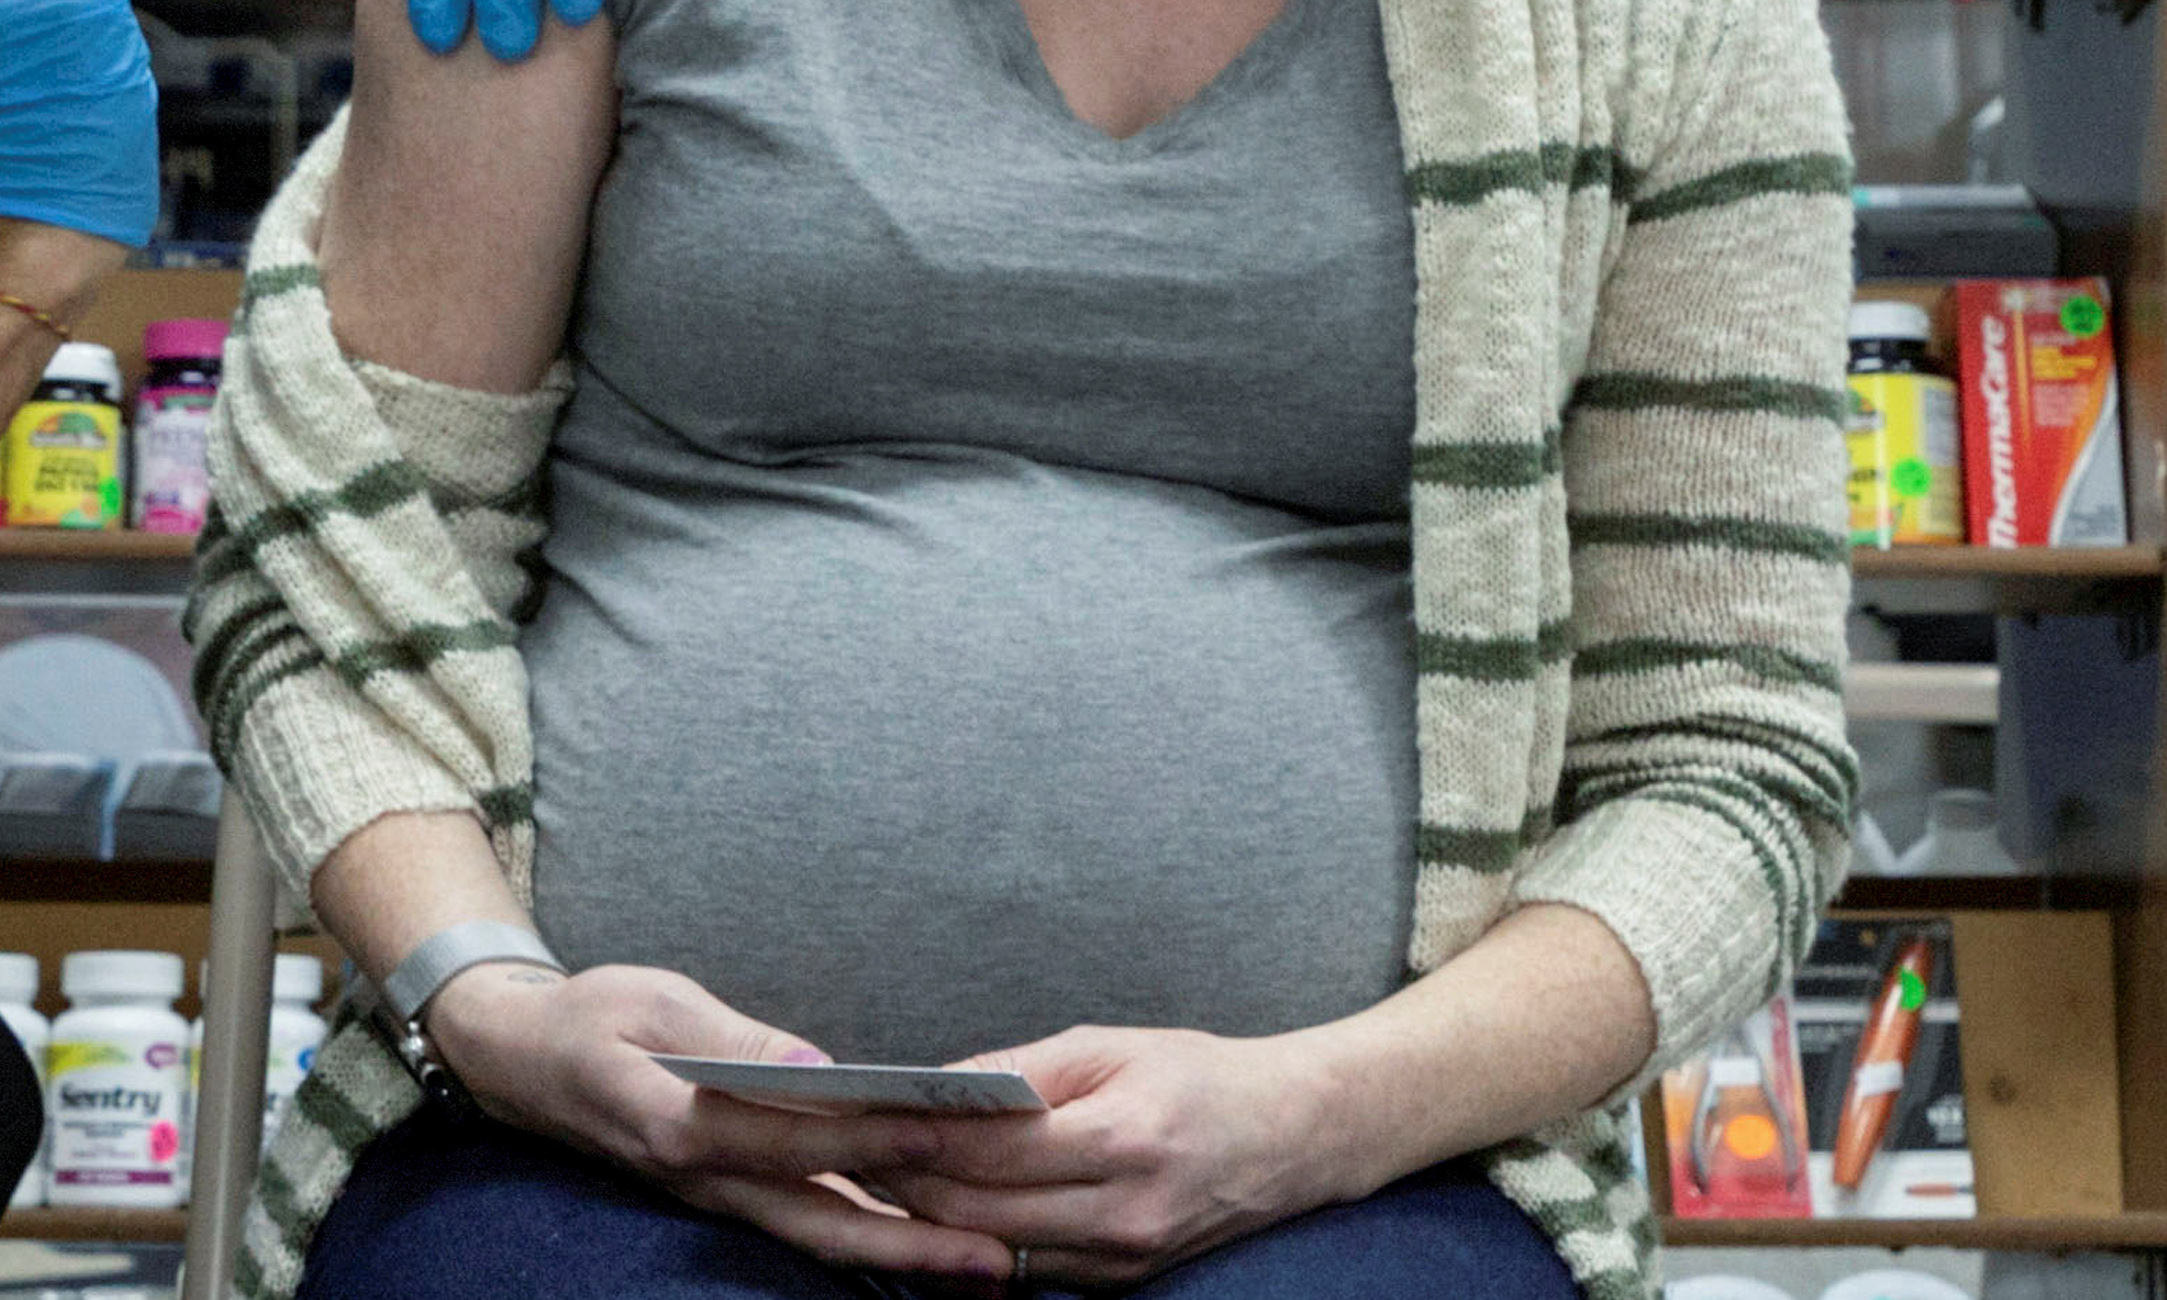 Ηράκλειο: Έγκυος γέννησε στην τουαλέτα του νοσοκομείου